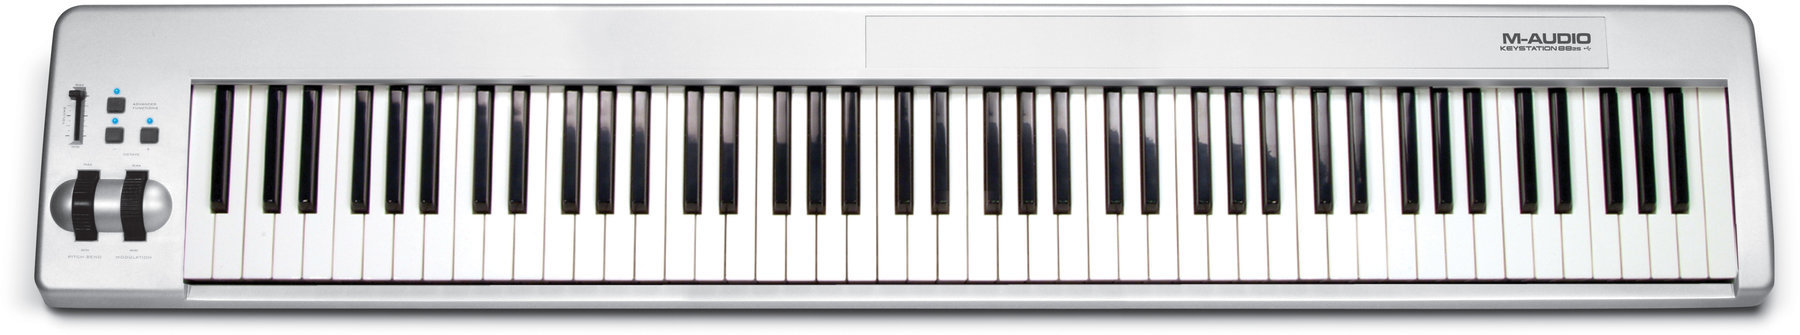 MIDI toetsenbord M-Audio Keystation 88 es